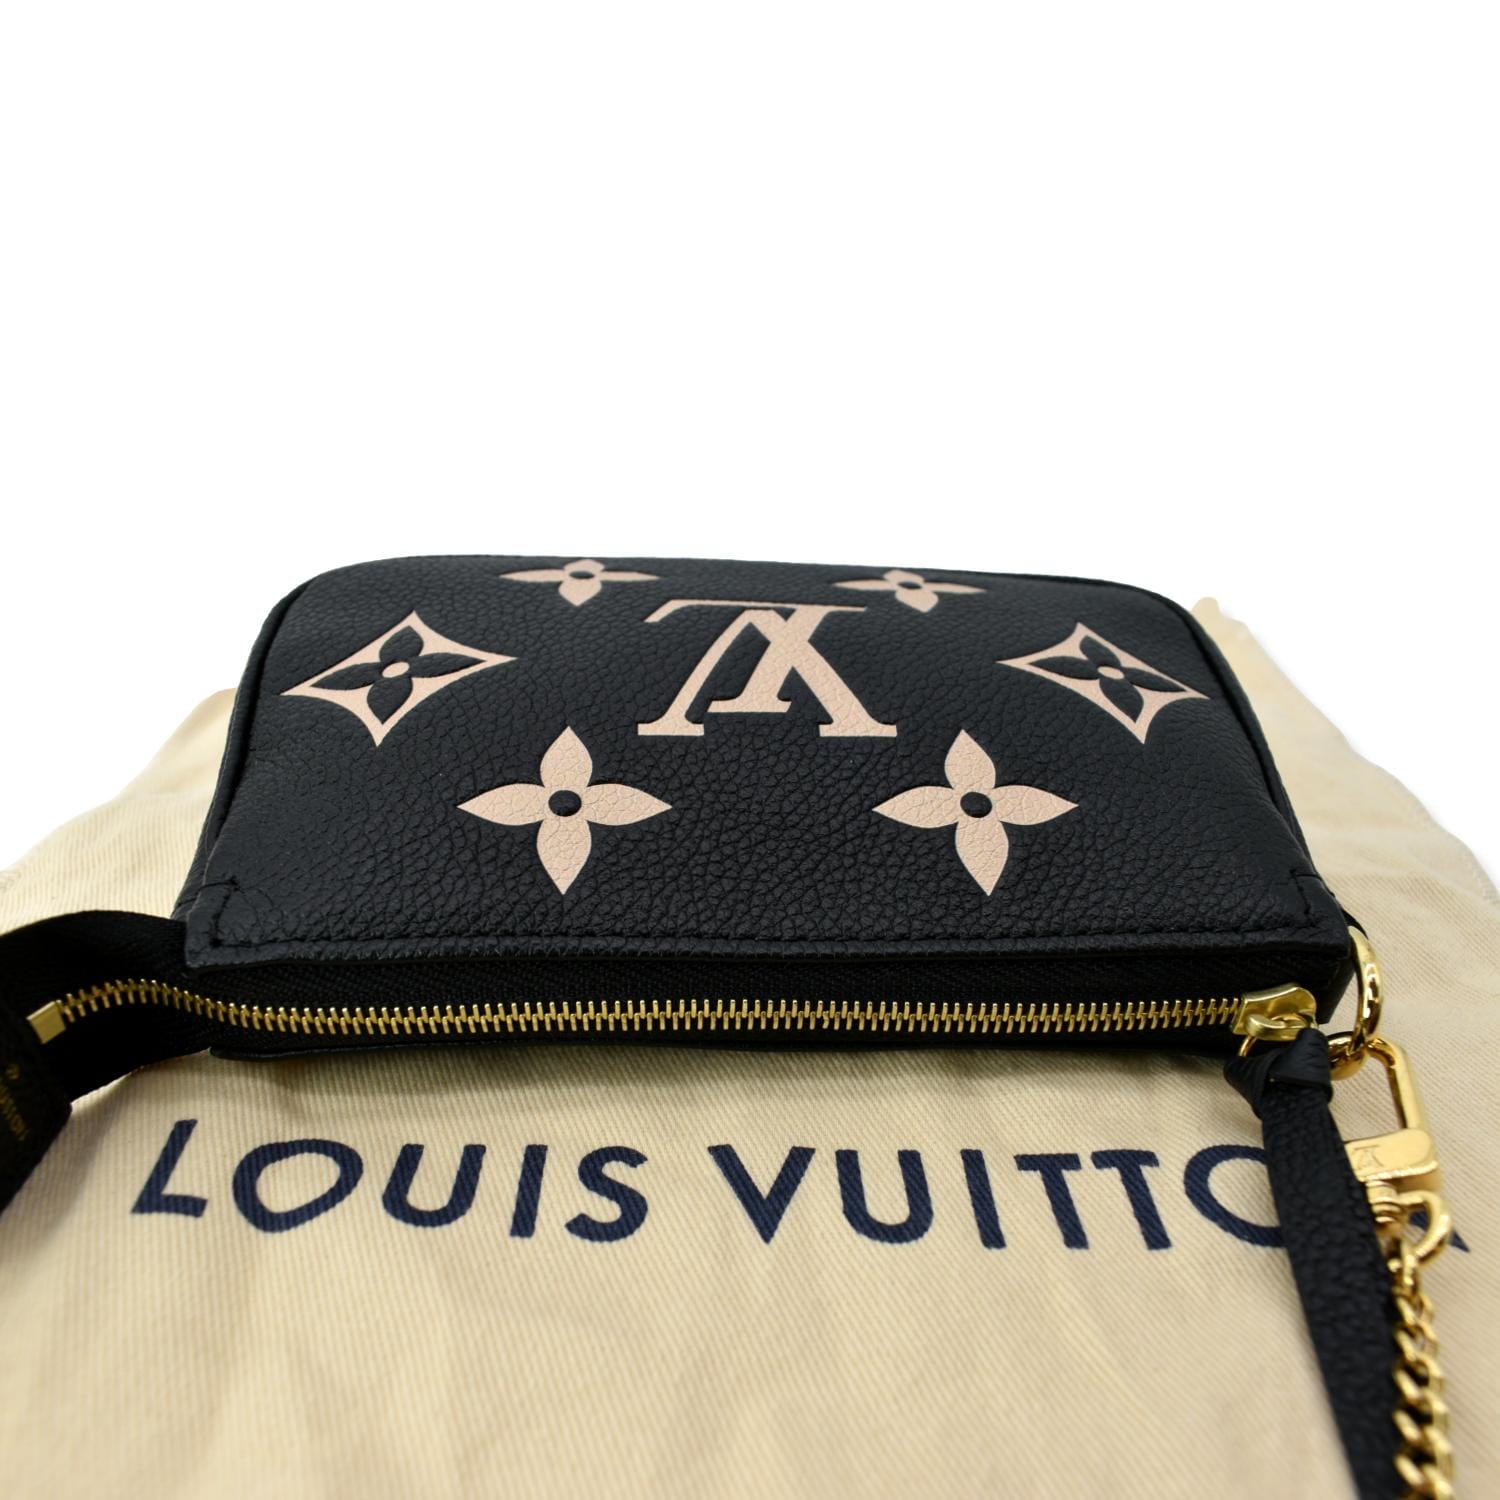 Louis Vuitton Bicolor Monogram Empreinte Collection